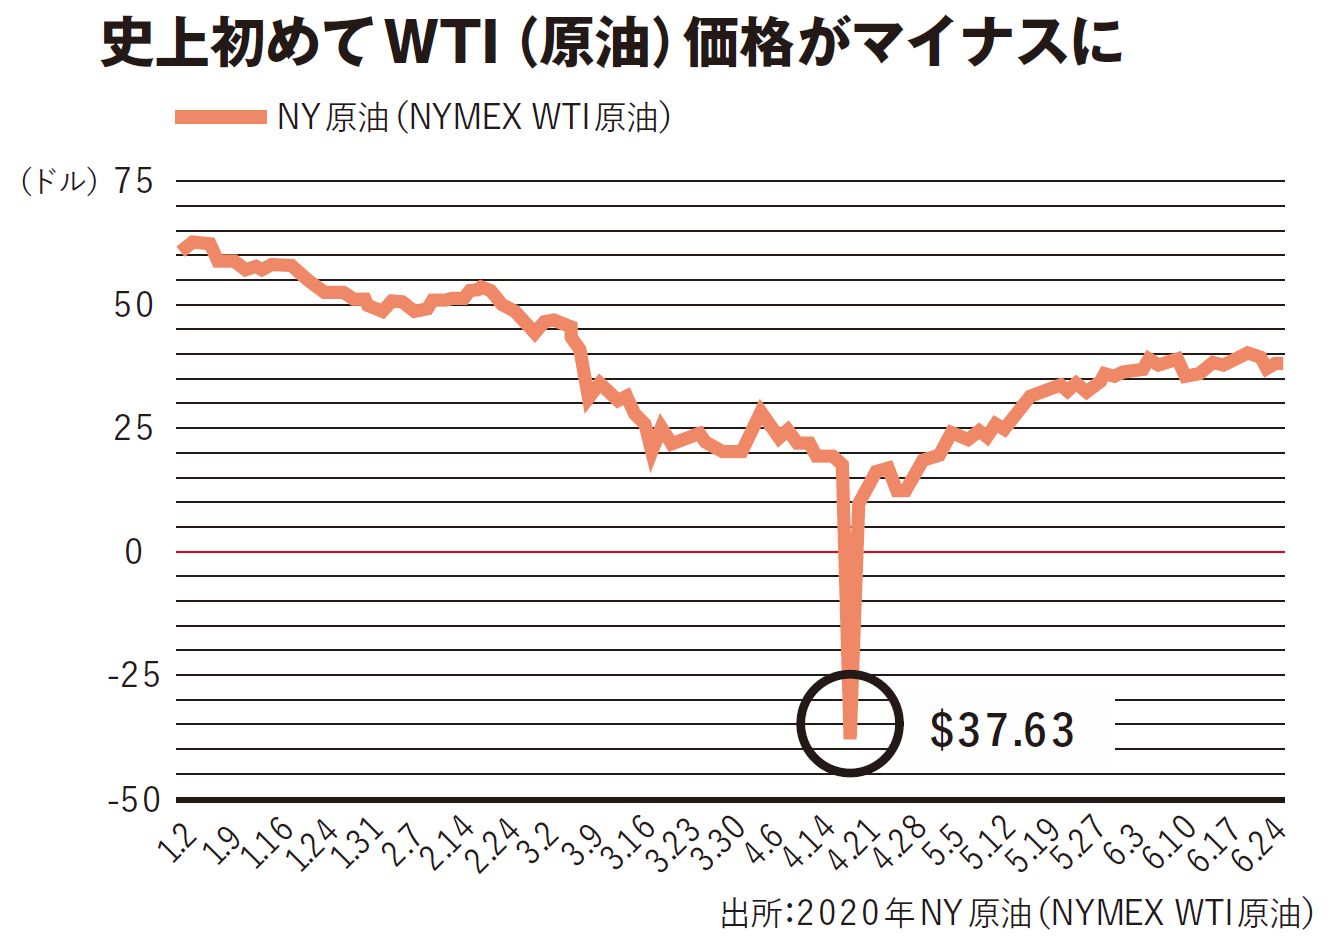 史上初のマイナスになった原油価格は元に戻るといえる理由